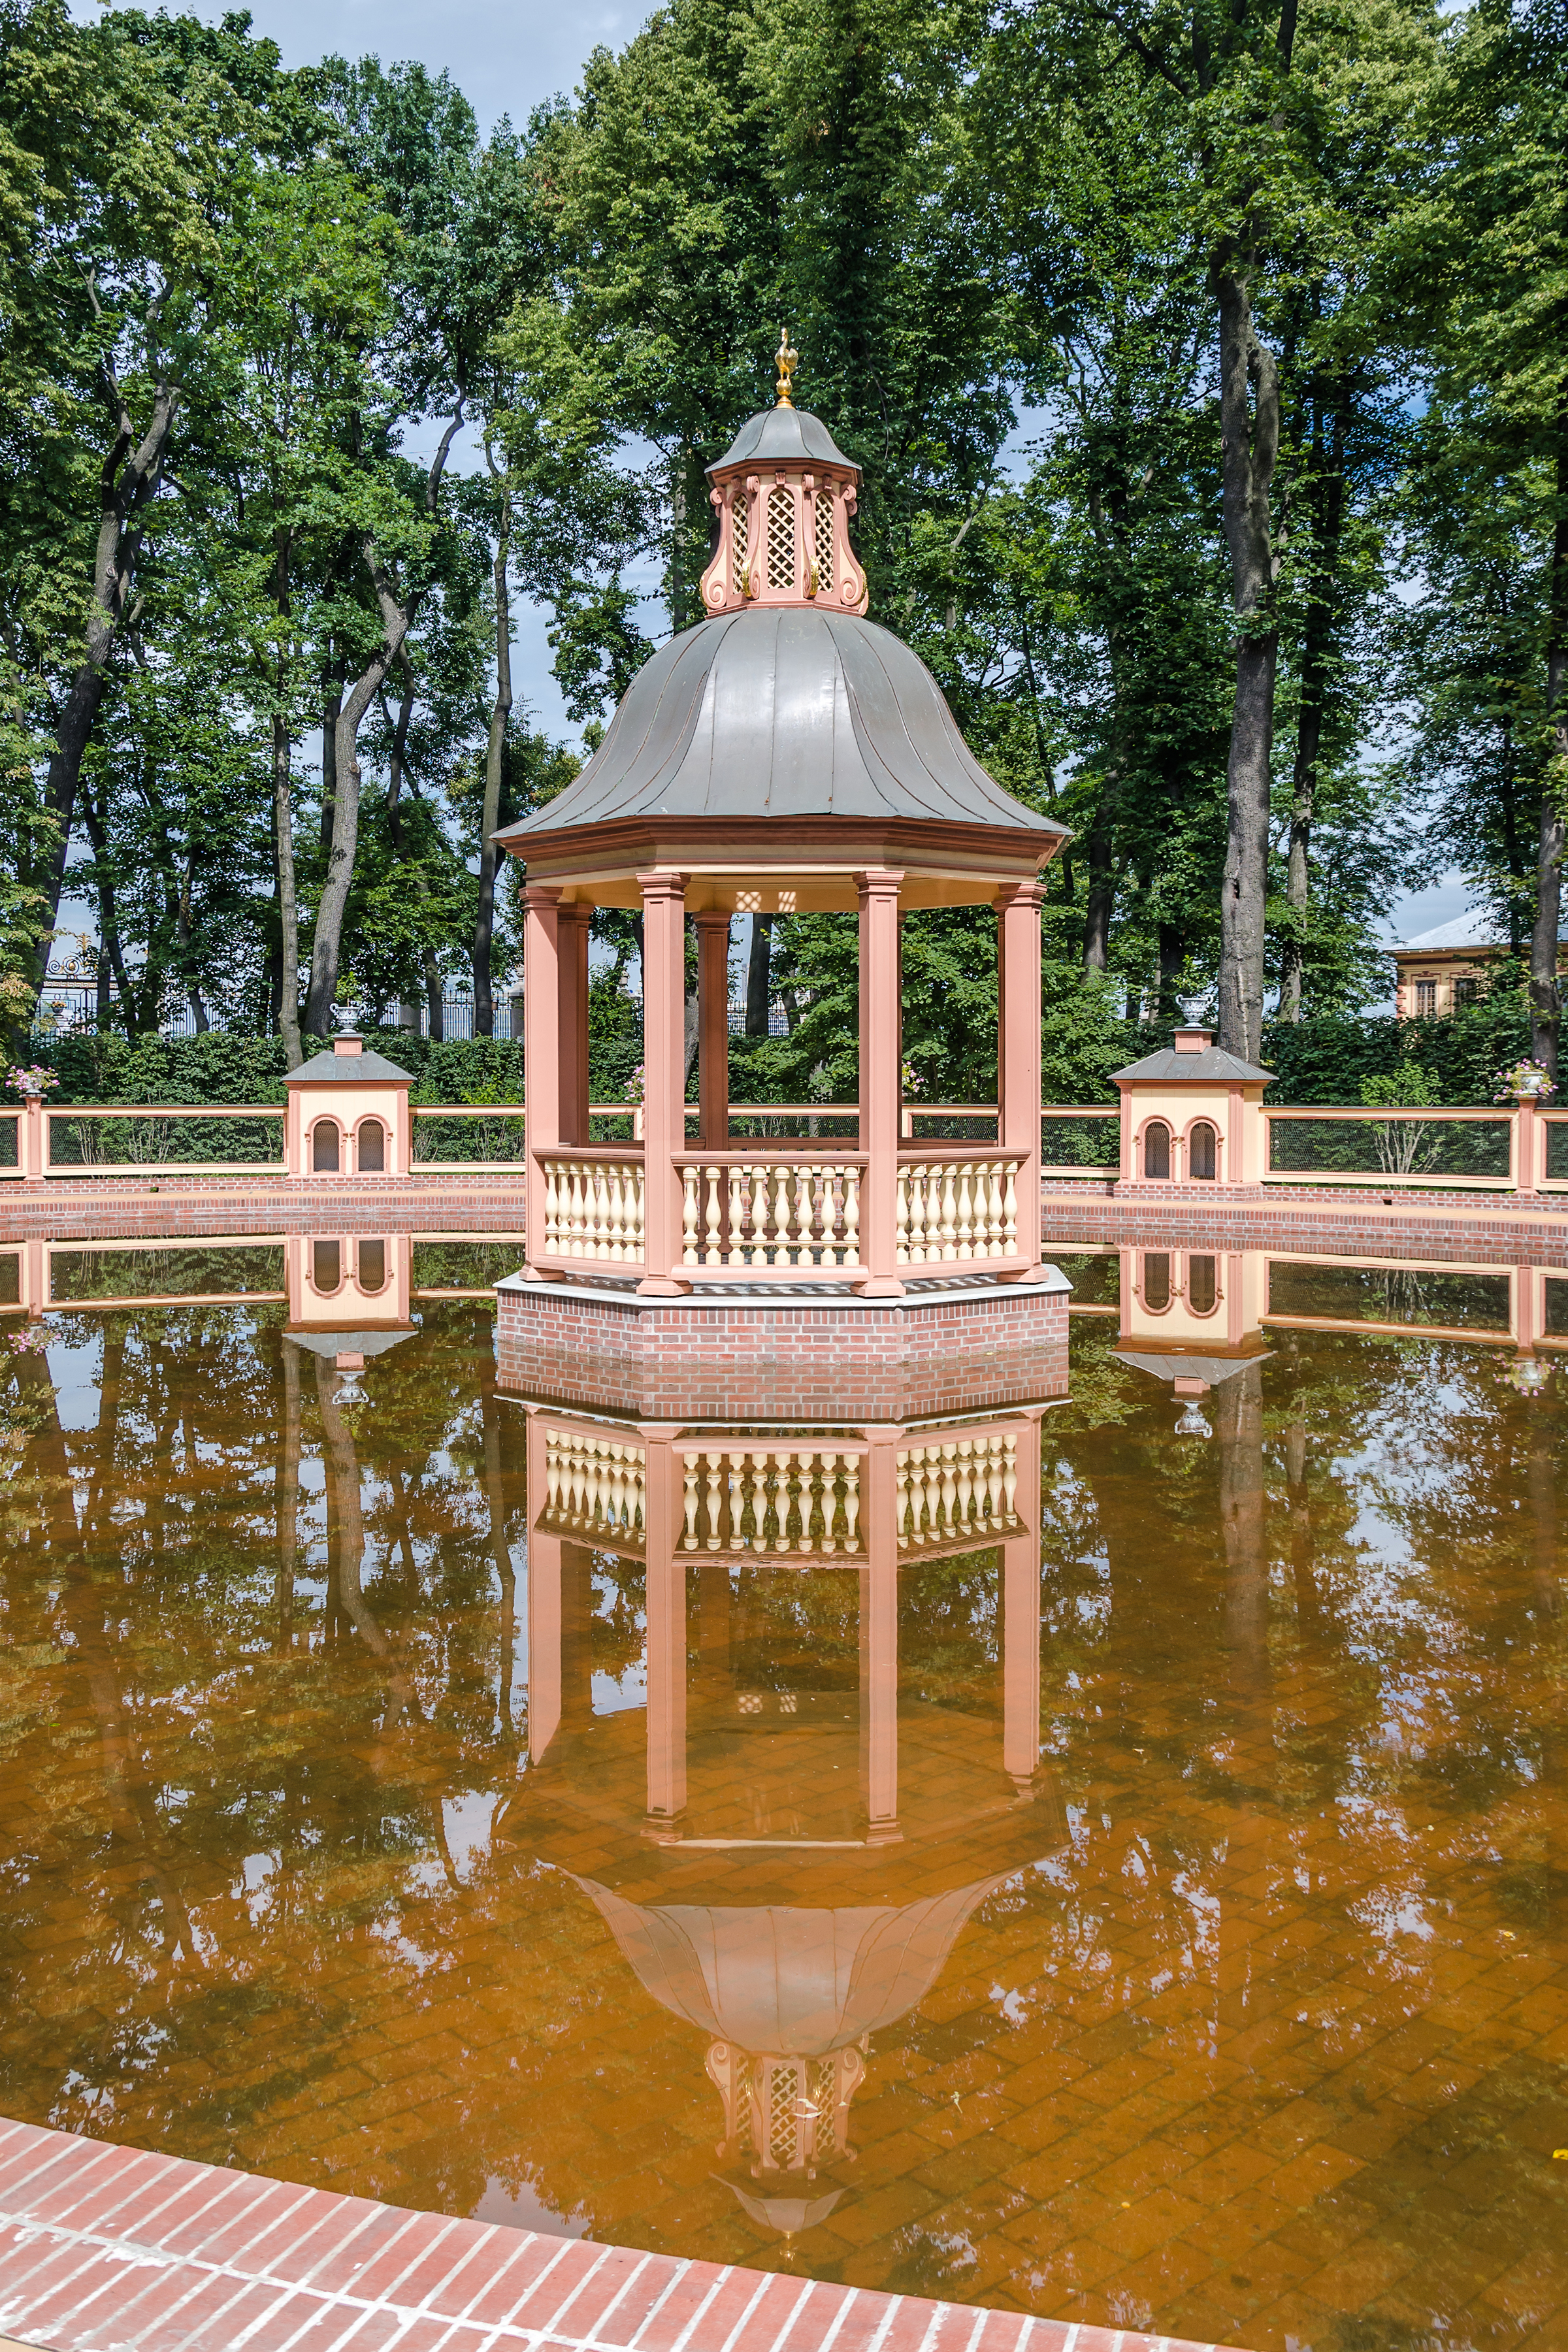 Pond de Ménagerie in Summer garden